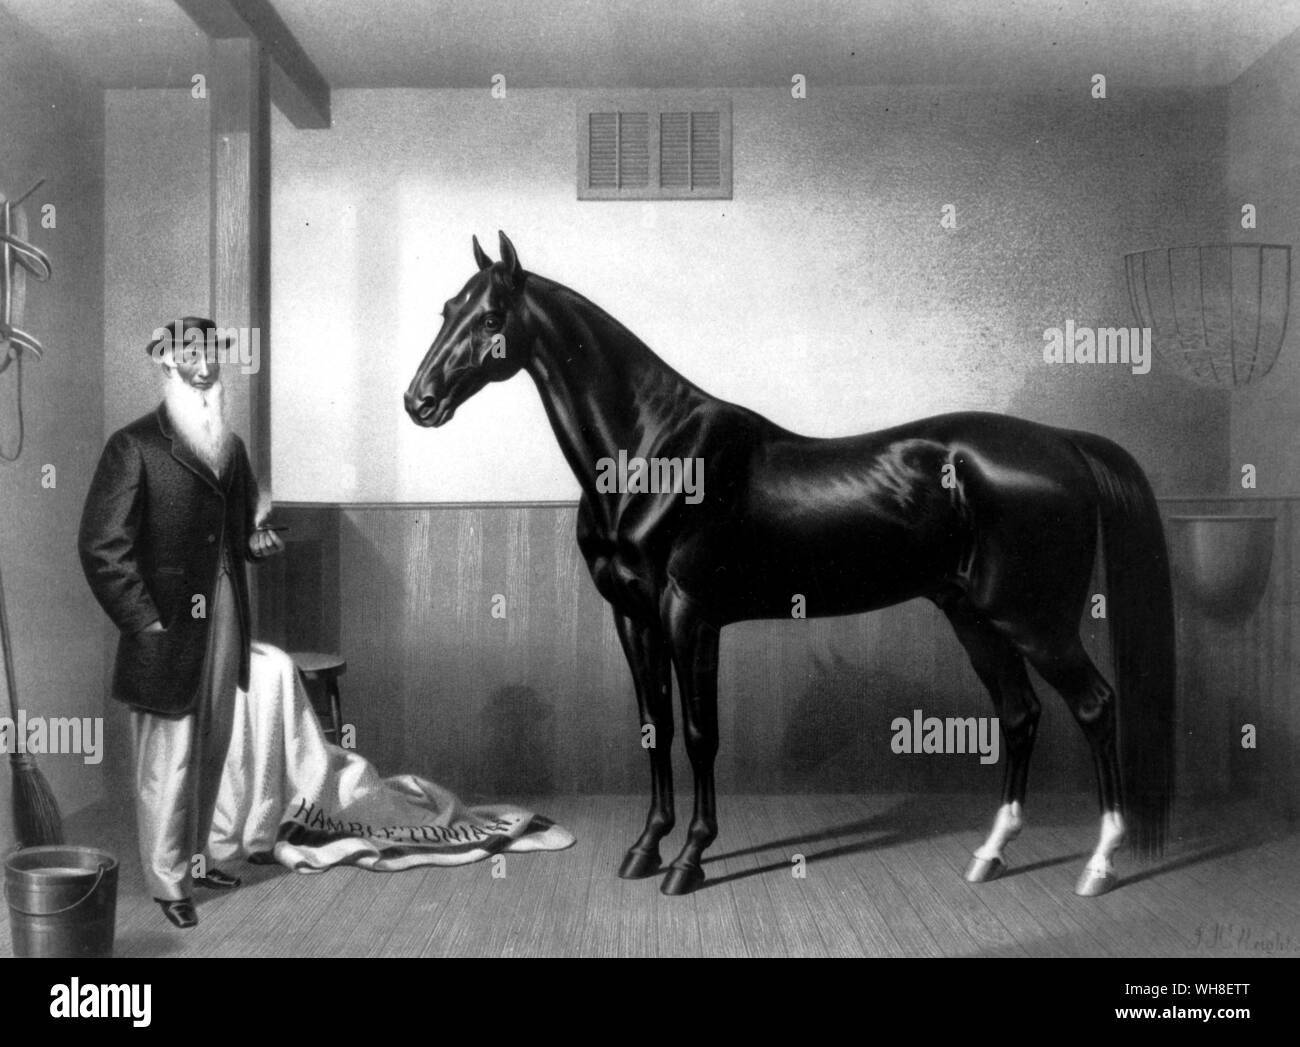 L'Hambletonian 1865 William Rysdyk, père de l'cheval au trot. Son employeur, Seeley, l'acquisition d'un Charles Kent Mare, qui avait été blessé en permanence et a été utilisé uniquement pour l'élevage. Produits par Bellfounder, elle était d'ascendance Norfolk Trotter, une race connue pour son allure lisse. Seeley produites sa mare d'Abdallah, qui est le petit-fils de Messenger, mais une moyenne et vilain cheval. La progéniture de la Charles Kent Mare et Abdullah était un bay colt qui était d'être la clé de voûte de l'avenir de la course sous harnais.. Rysdyk convaincu son employeur de lui vendre le colt et le nomme Hambletonian. Dans tous les, Hambletonian Banque D'Images